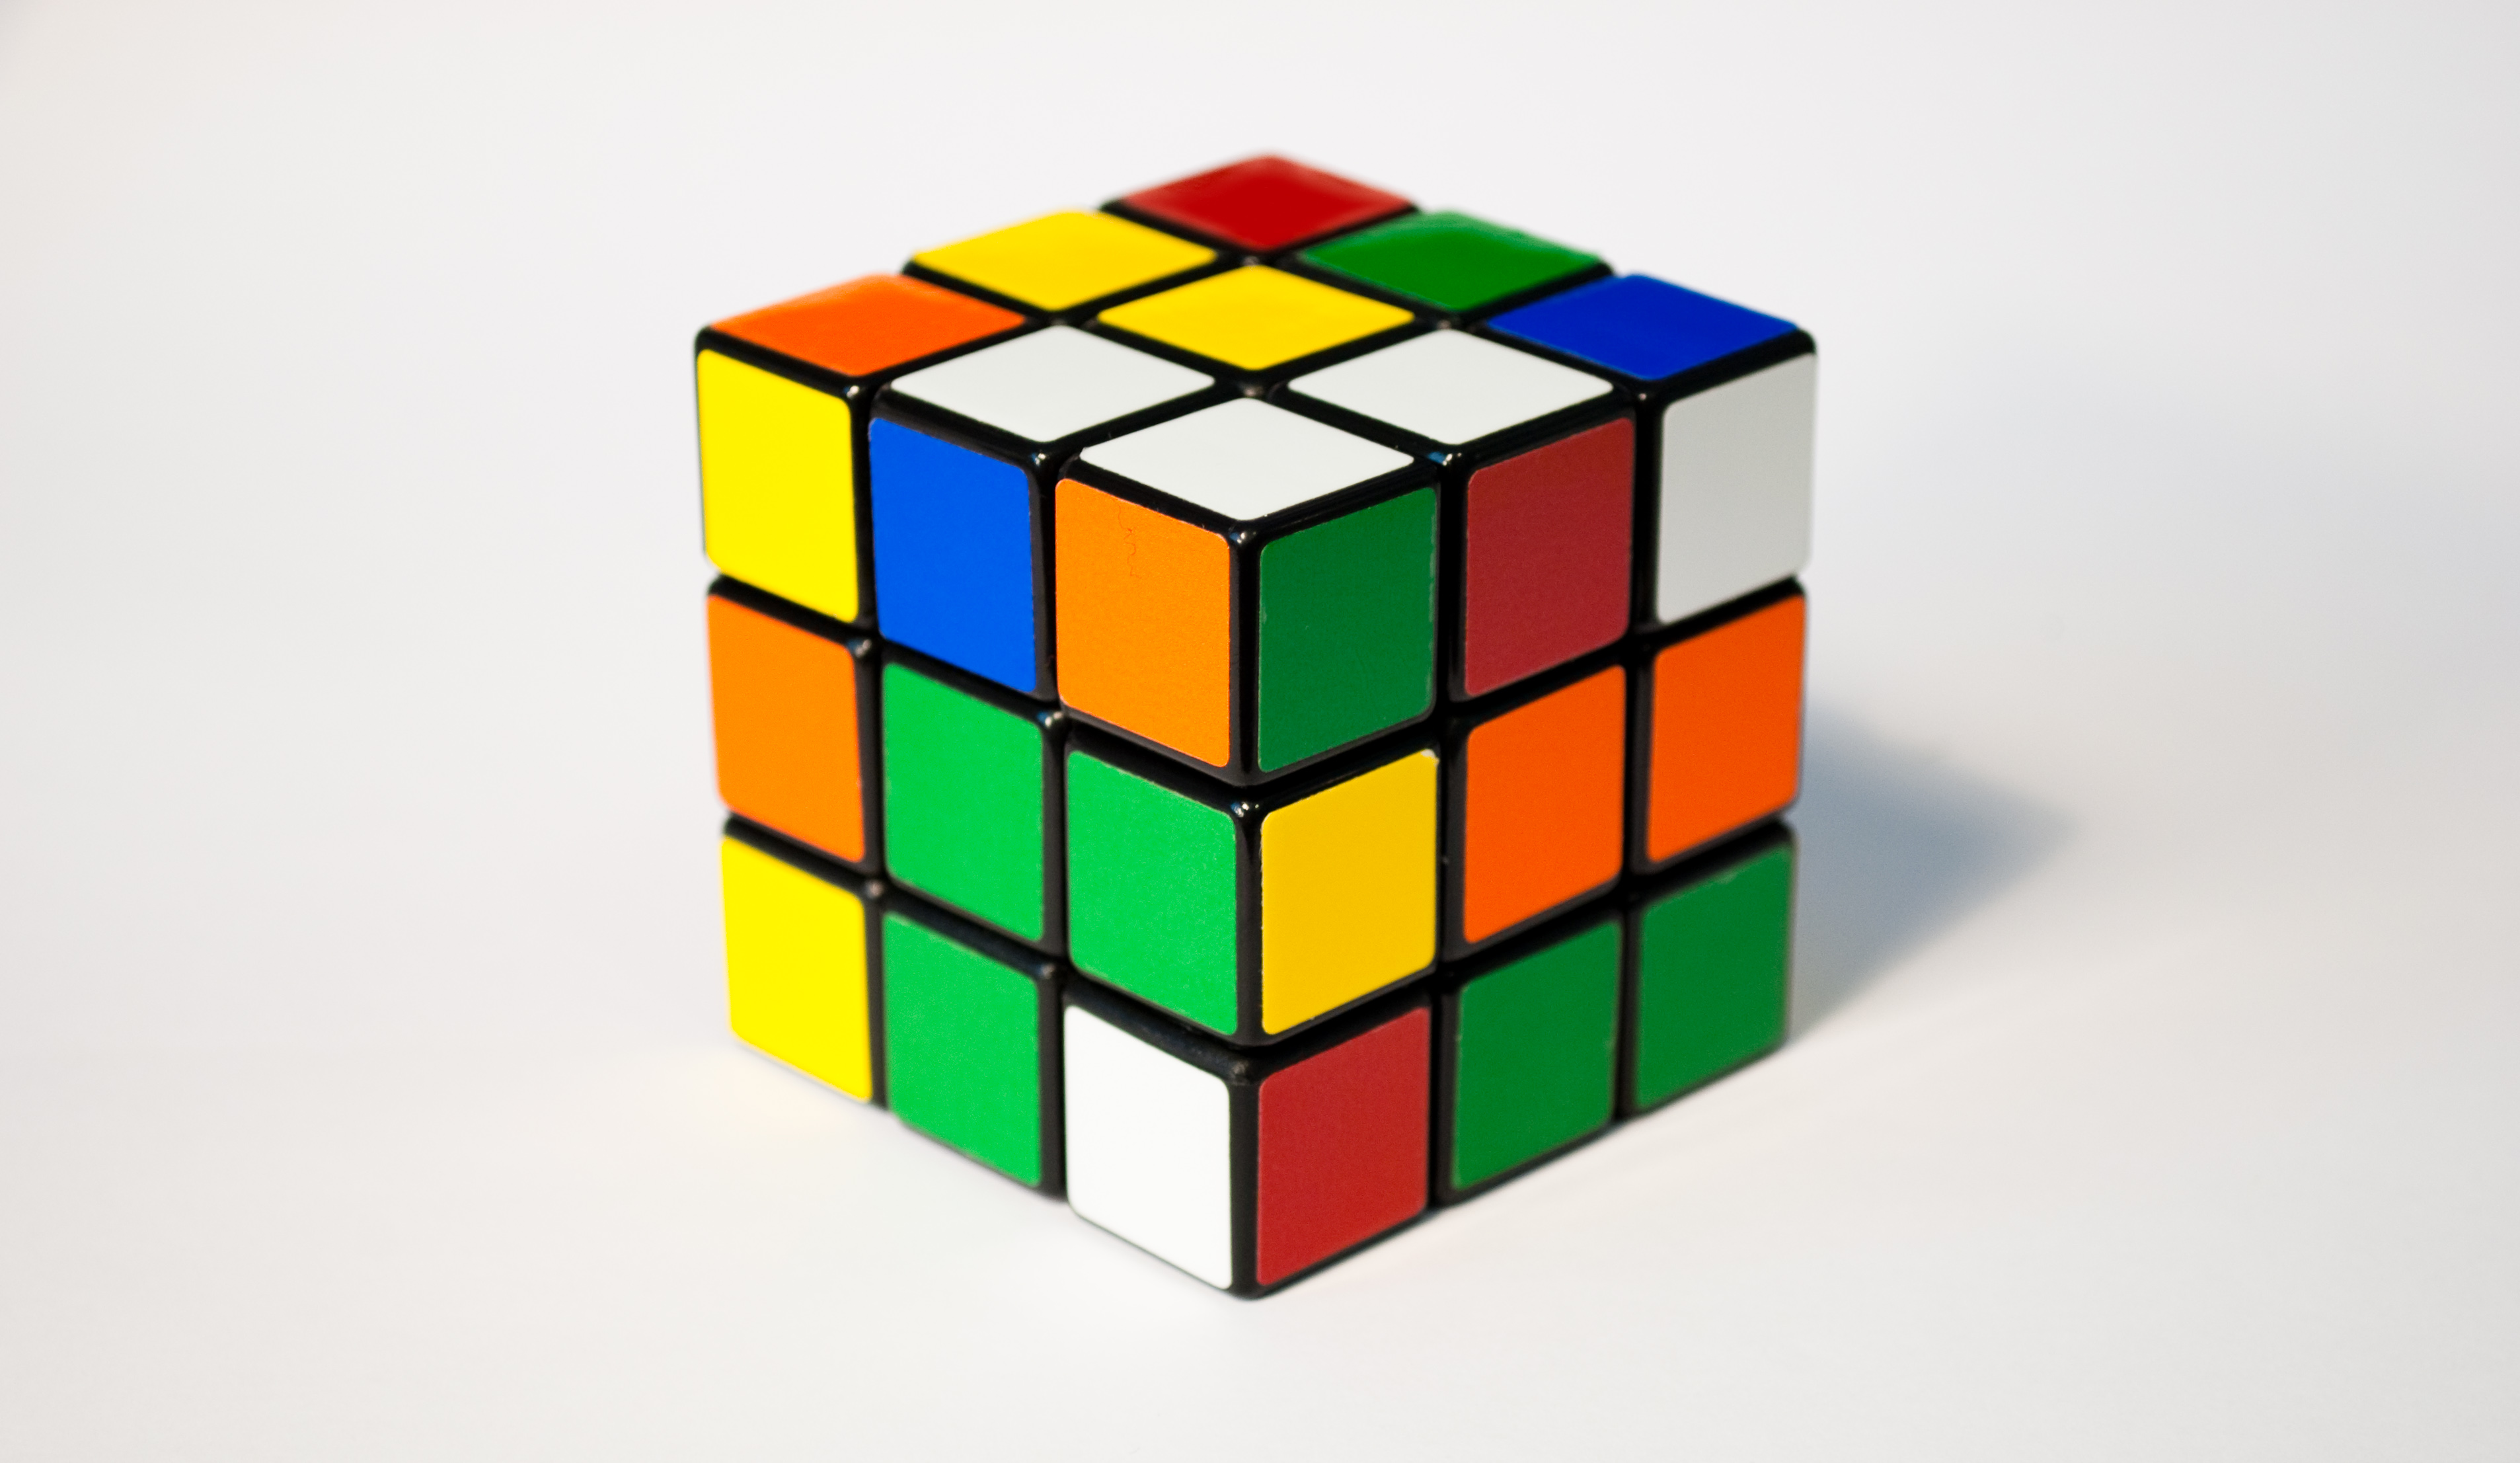 2. Buổi chiều học thủ thuật Rubik 4x4